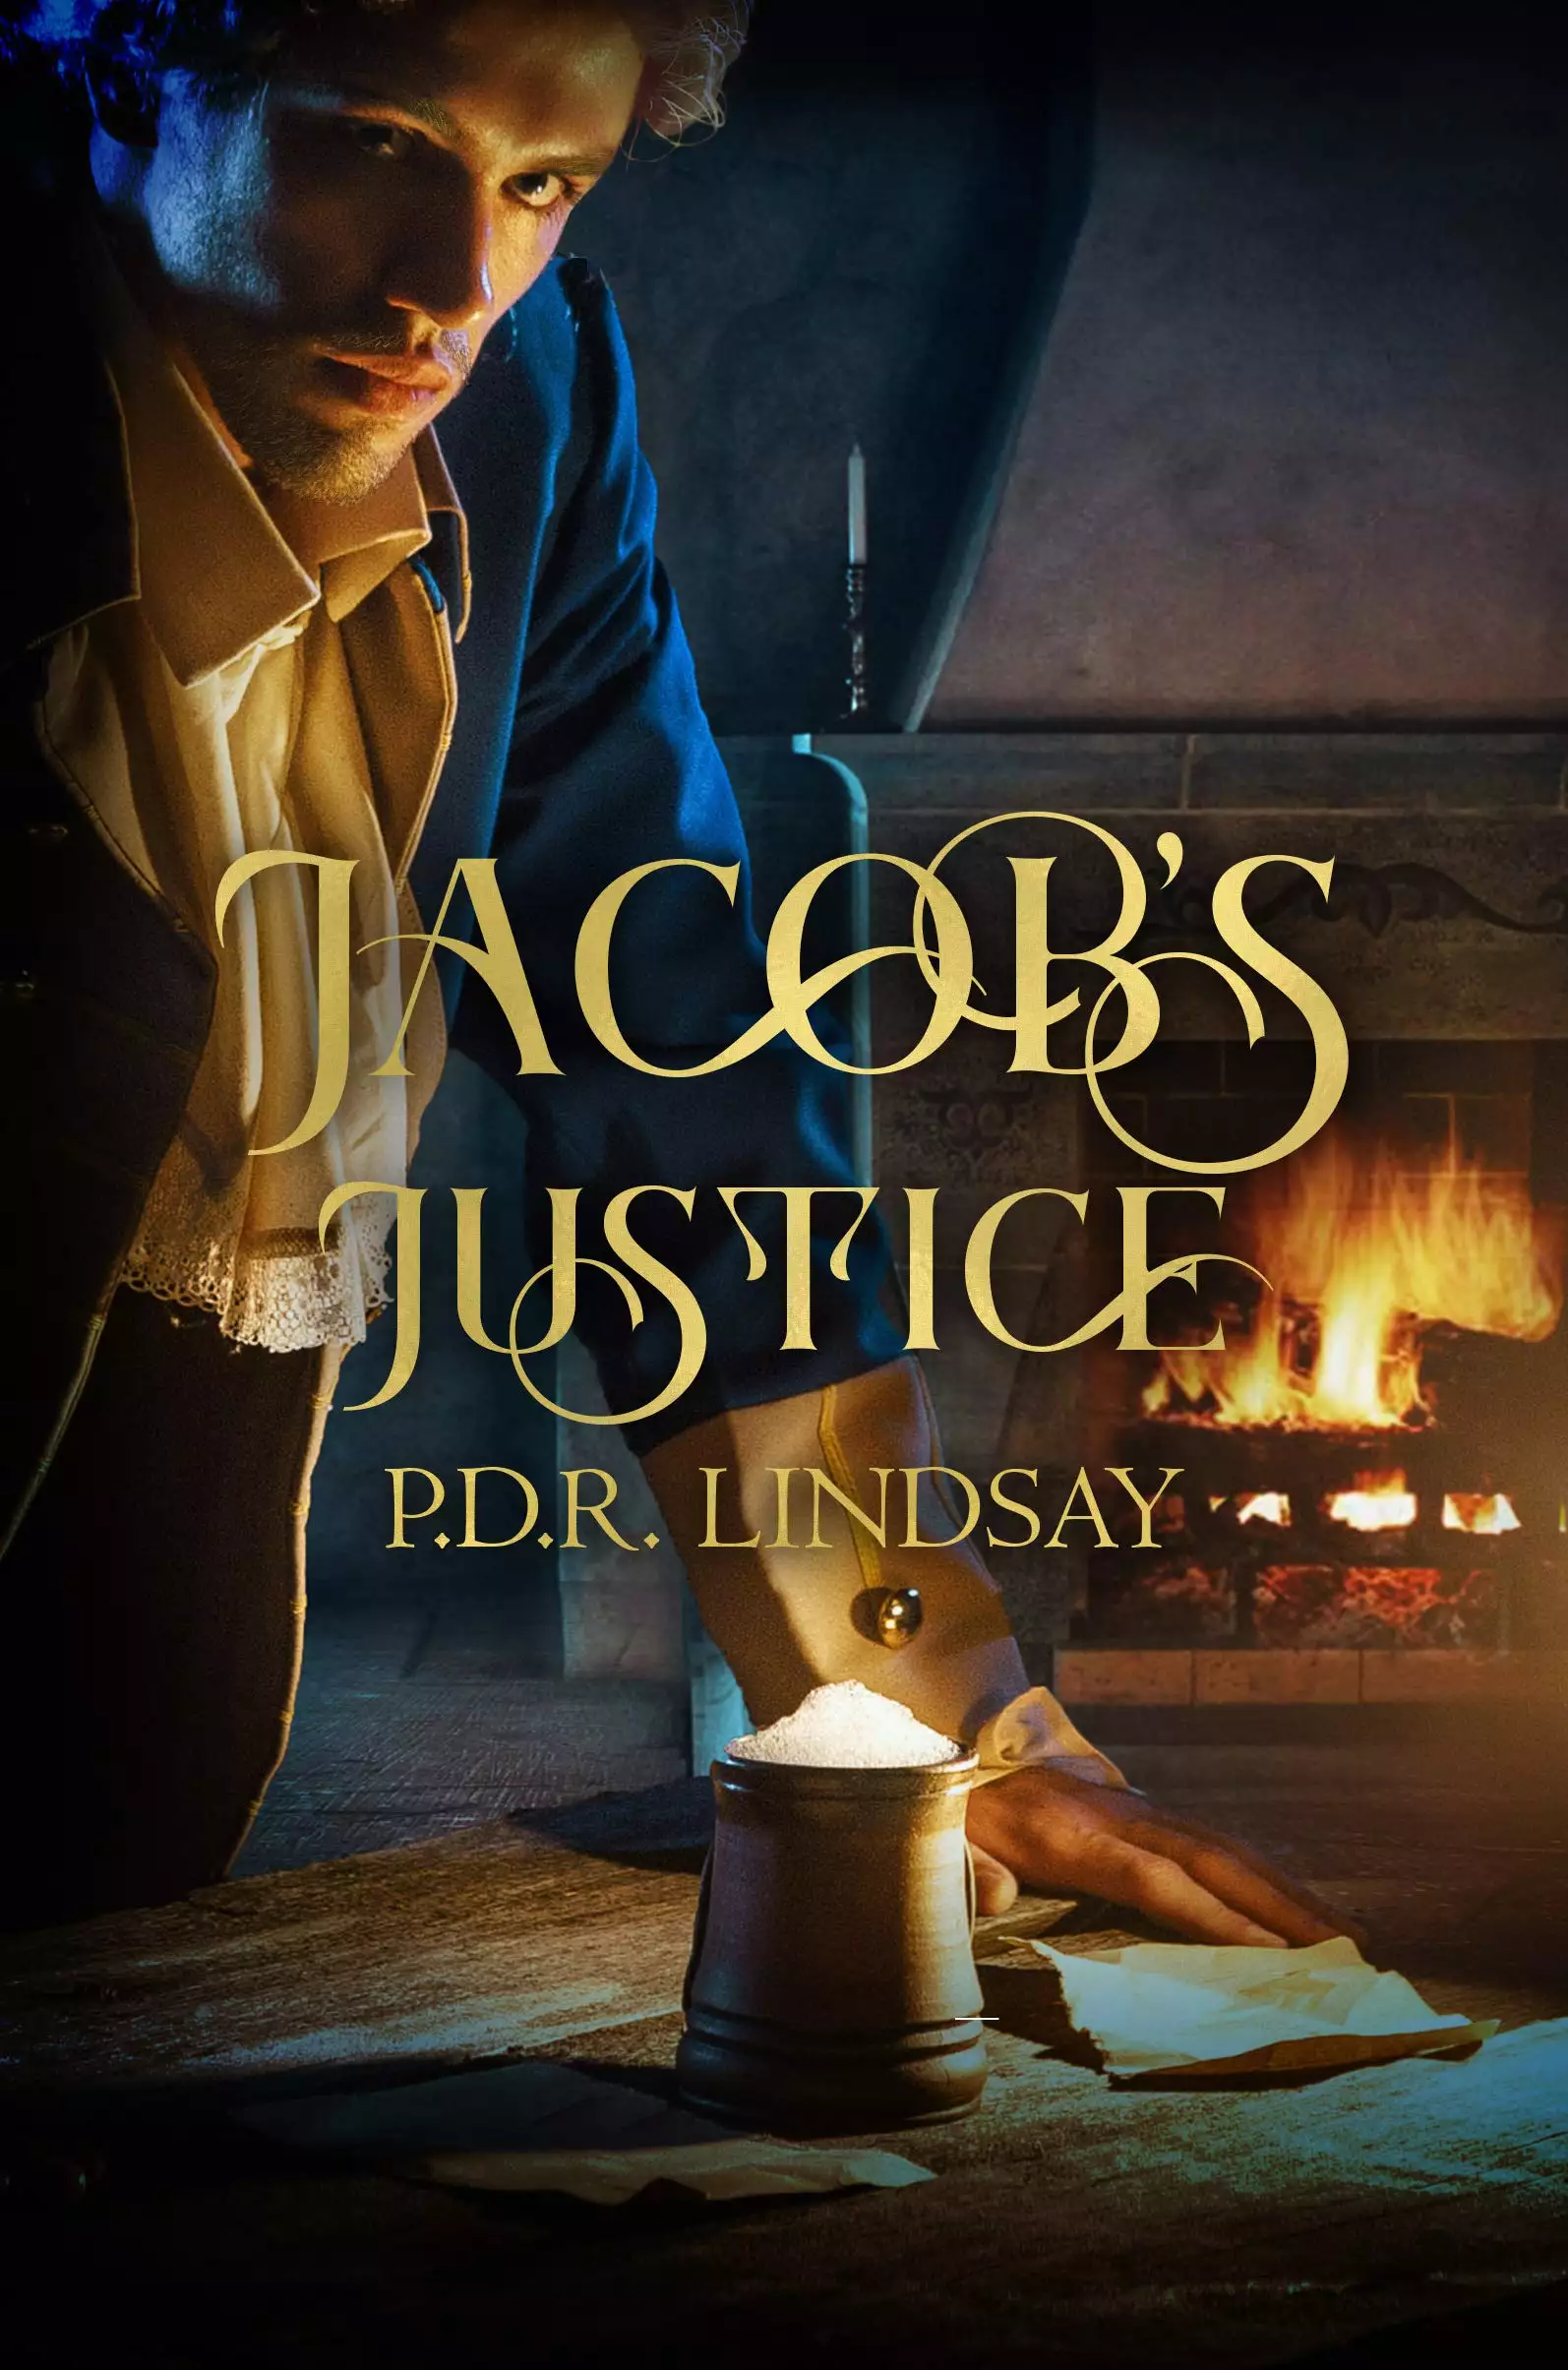 'Jacob's Justice': a Civil War adventure